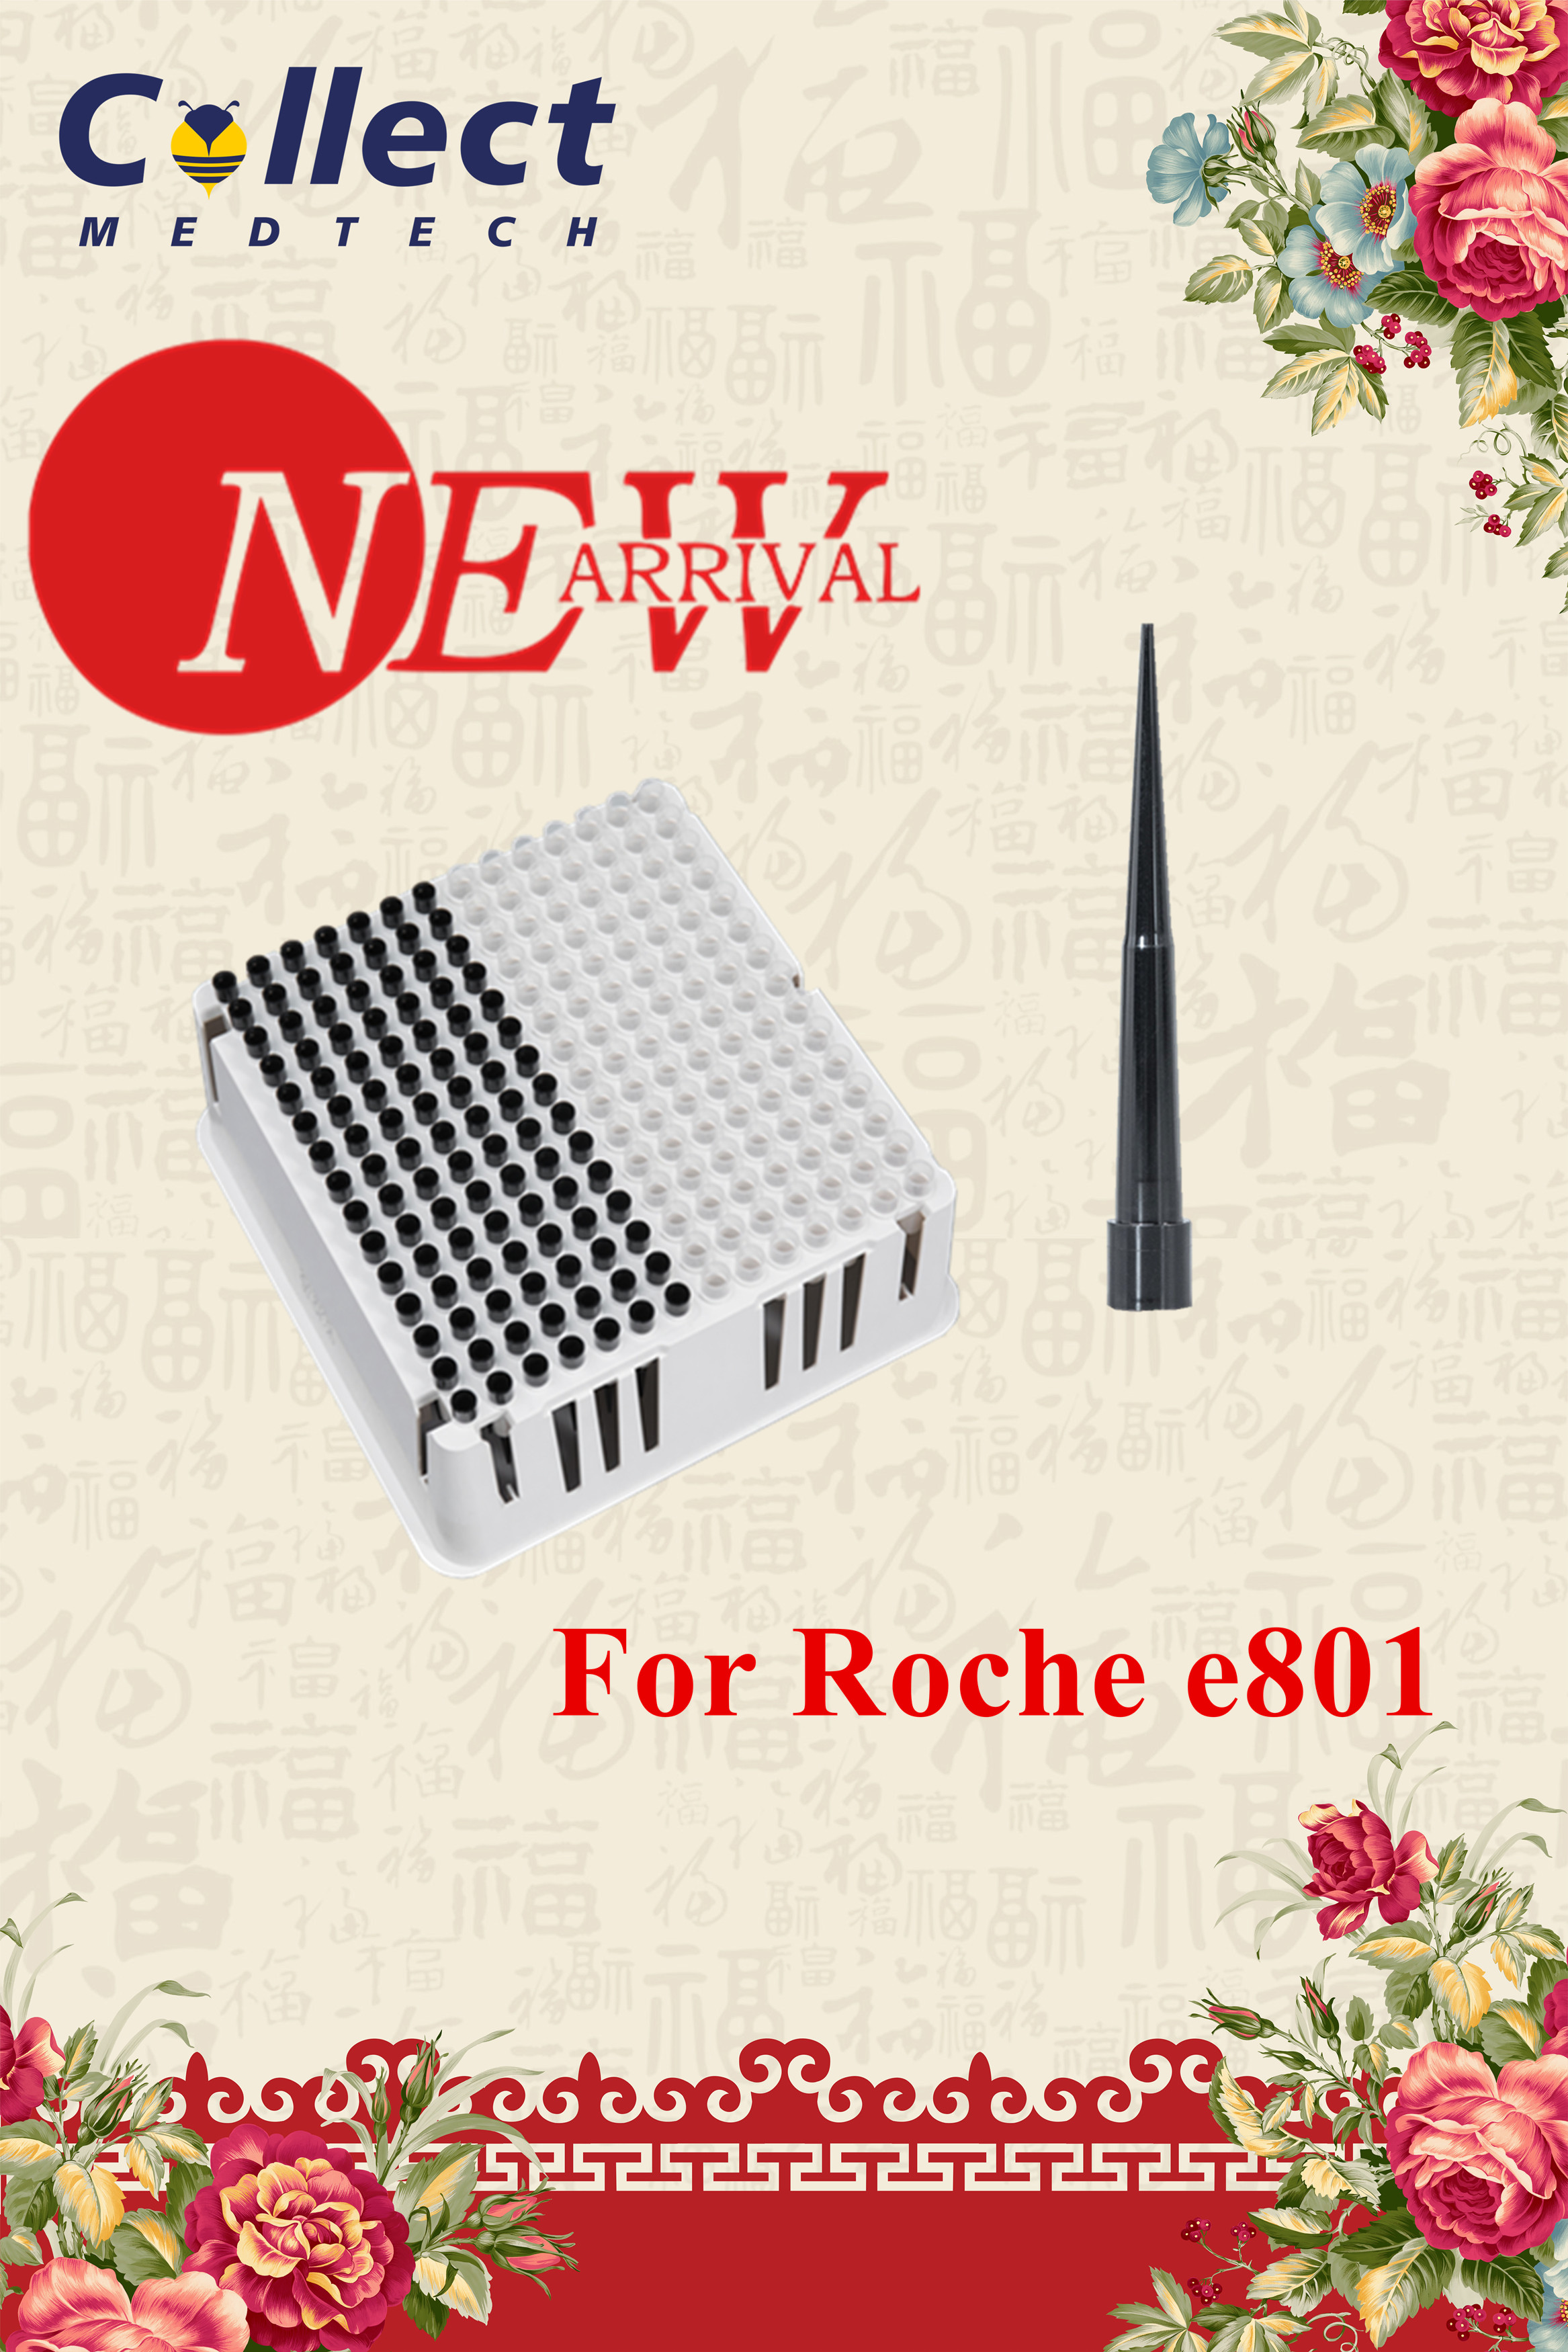 ມາໃໝ່ - ຖາດເຄັດລັບ ແລະຖ້ວຍສຳລັບ Roche e801